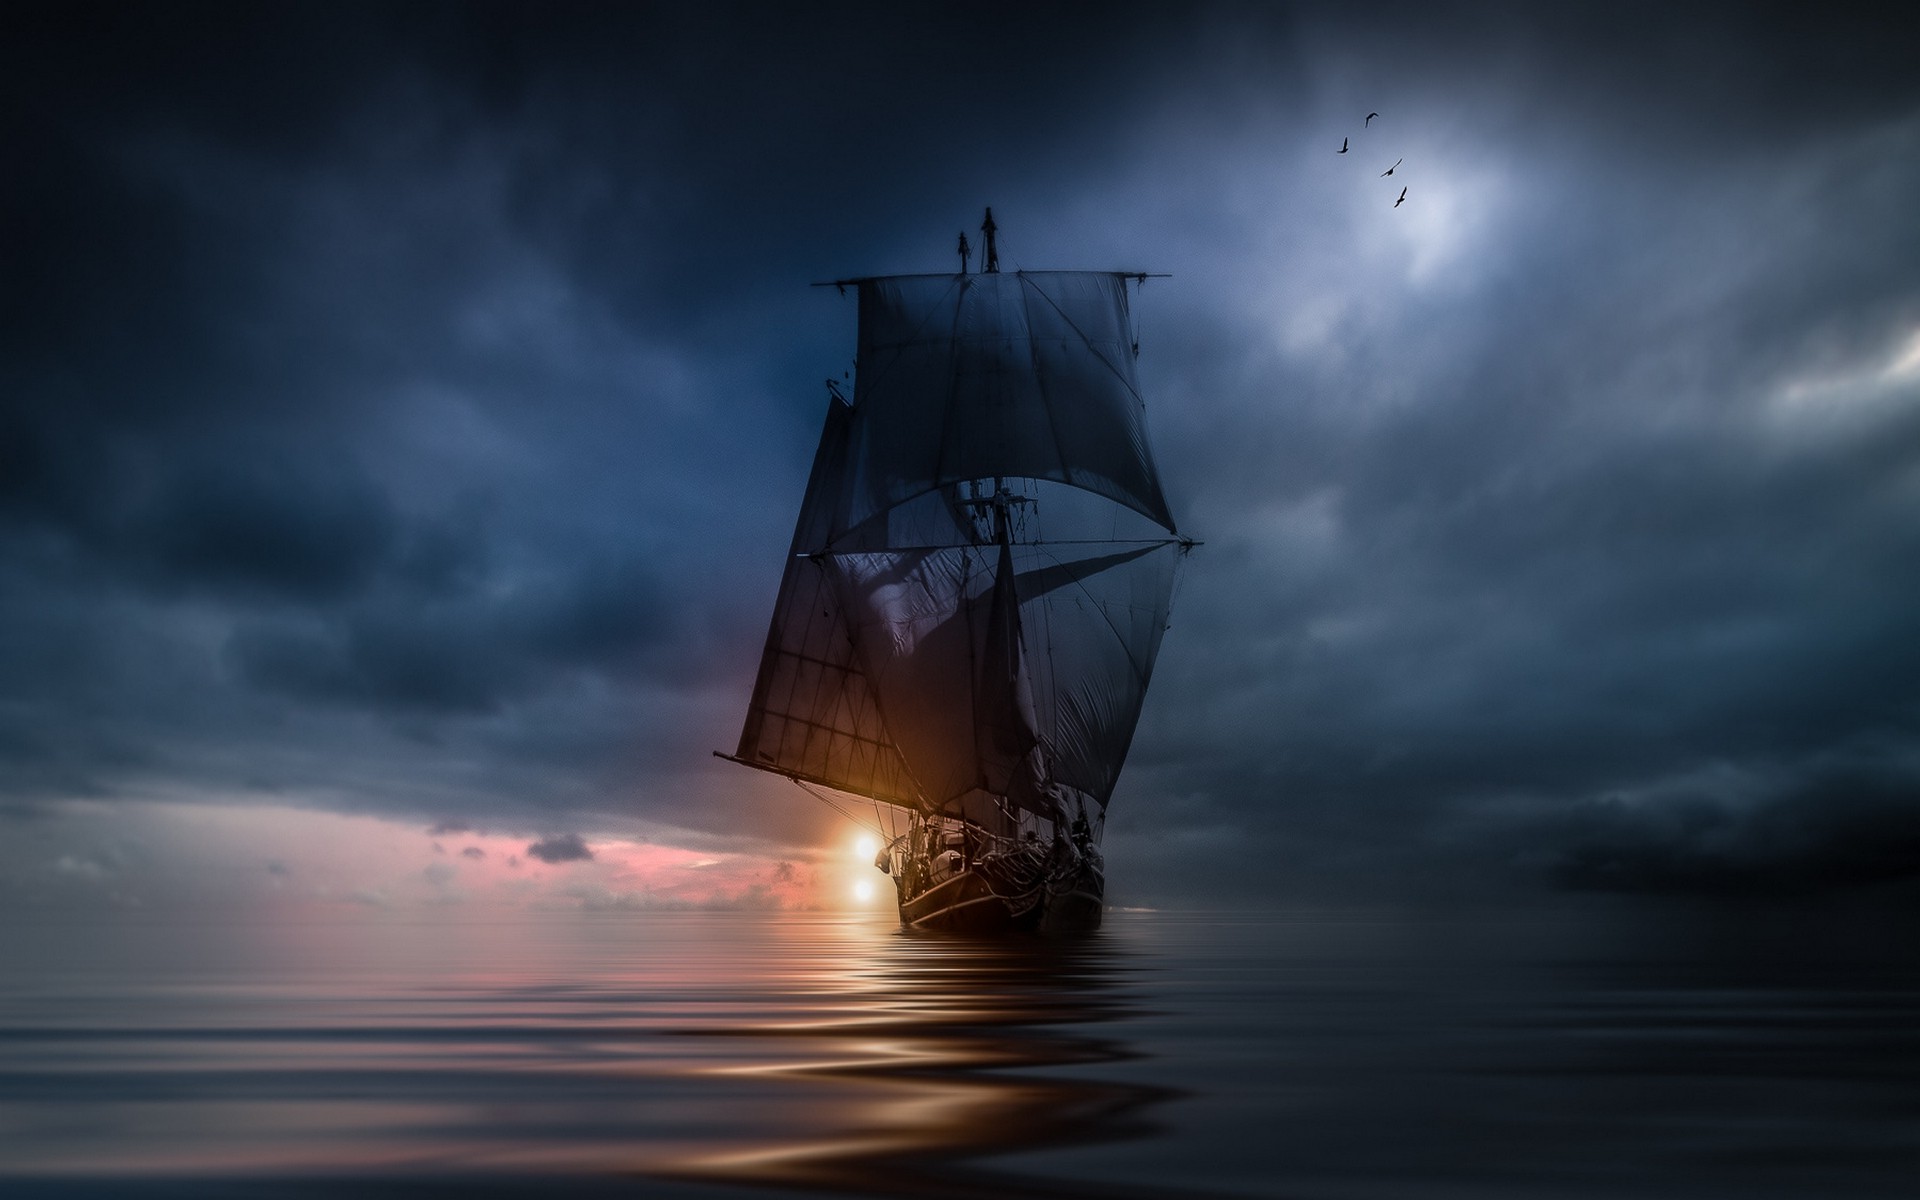 landscape Nature Sea Clouds Sunset Sailing Ship Storm Blue